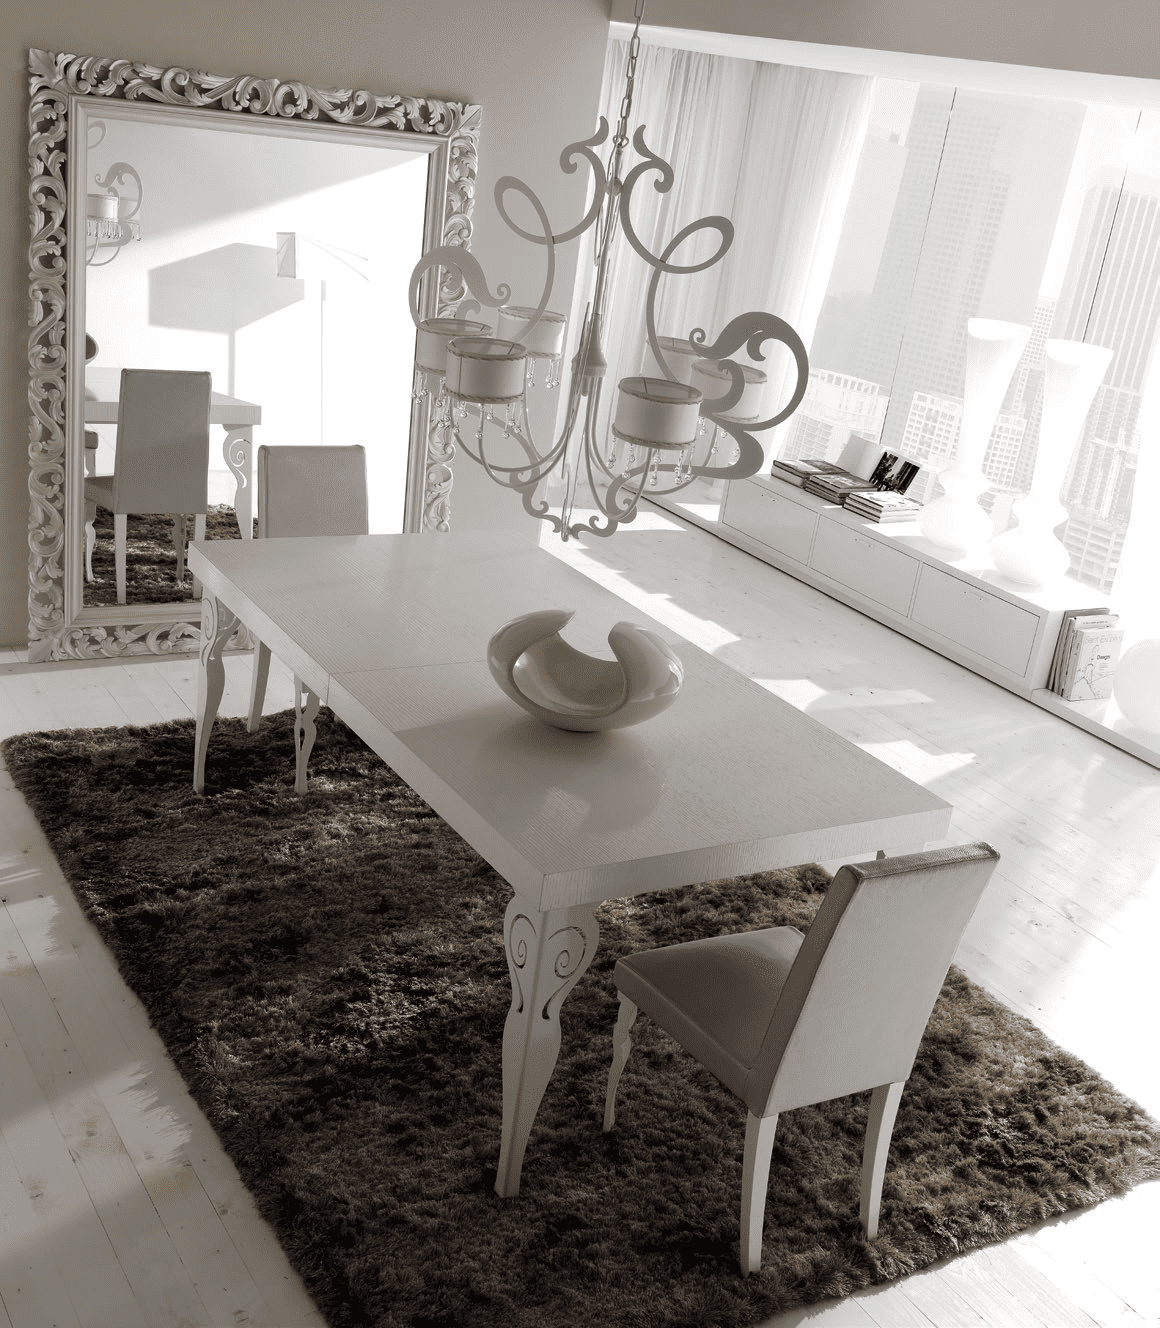 Комплект мебели для столовой CorteZari из Италии